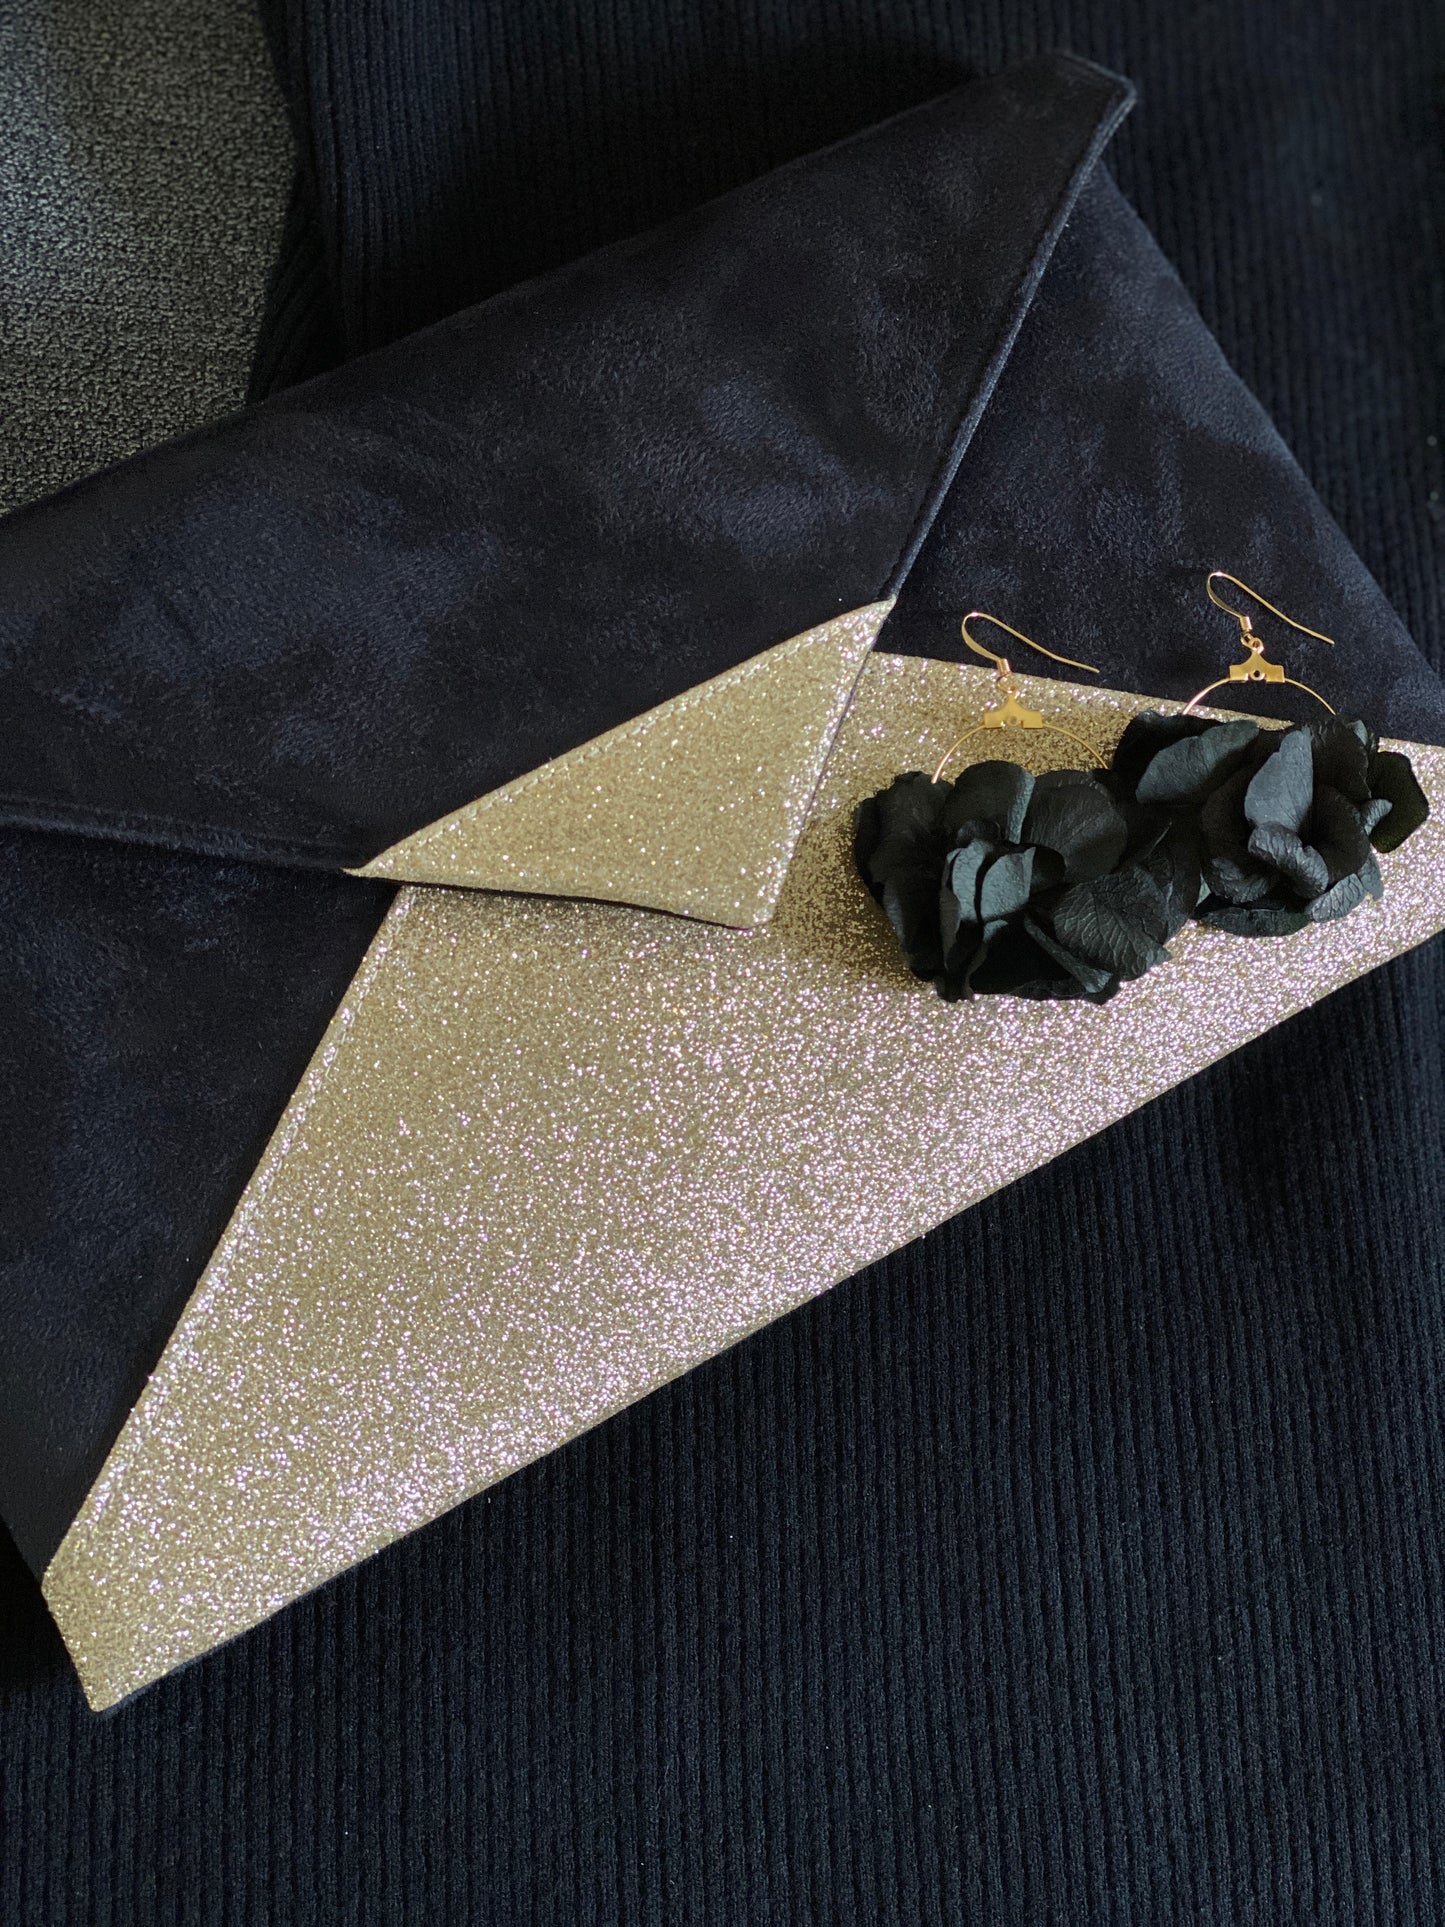 Pochette noire dorée et boucles d'oreilles noires en fleurs stabilisées - L'atelier de Clotilde - Fil des toiles